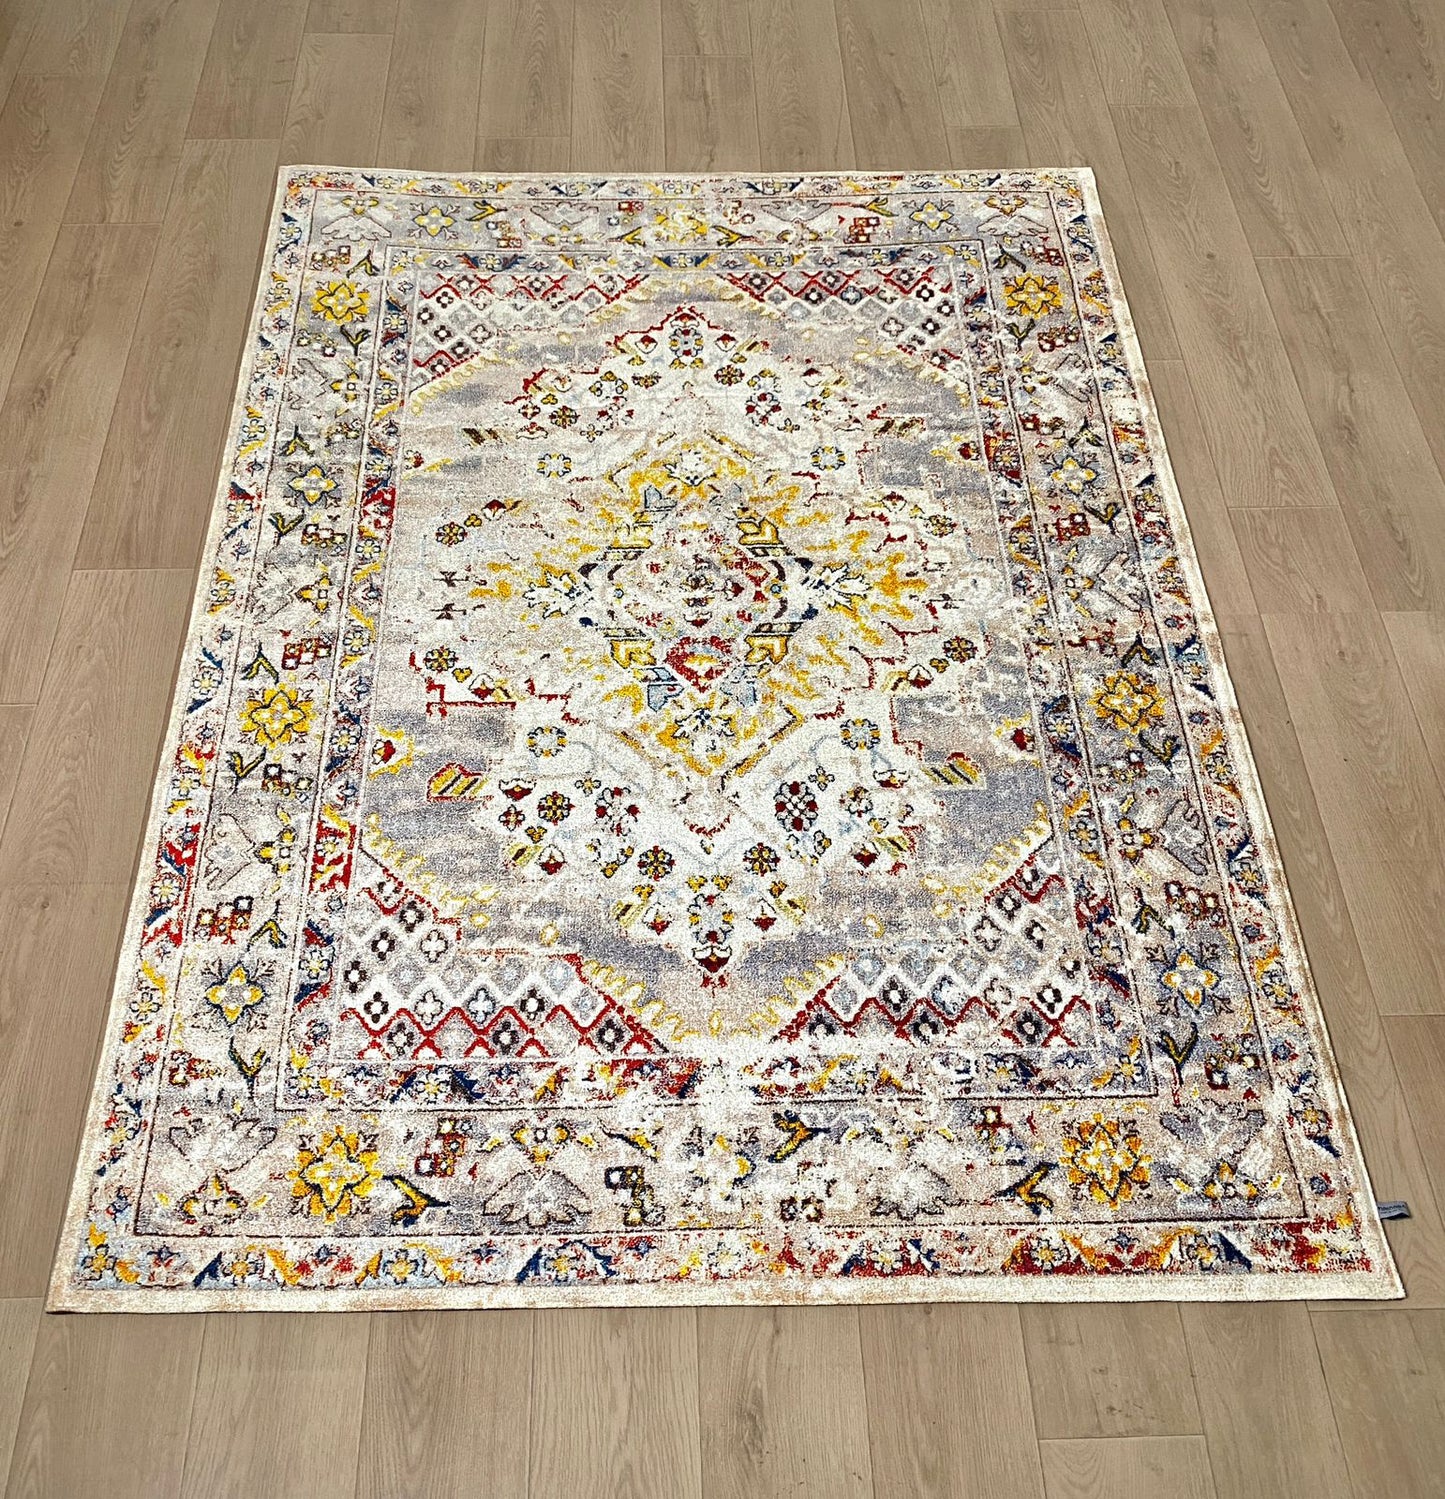 Karpet Tradisional (GW-T-0049) - Grey,Cream,Yellow